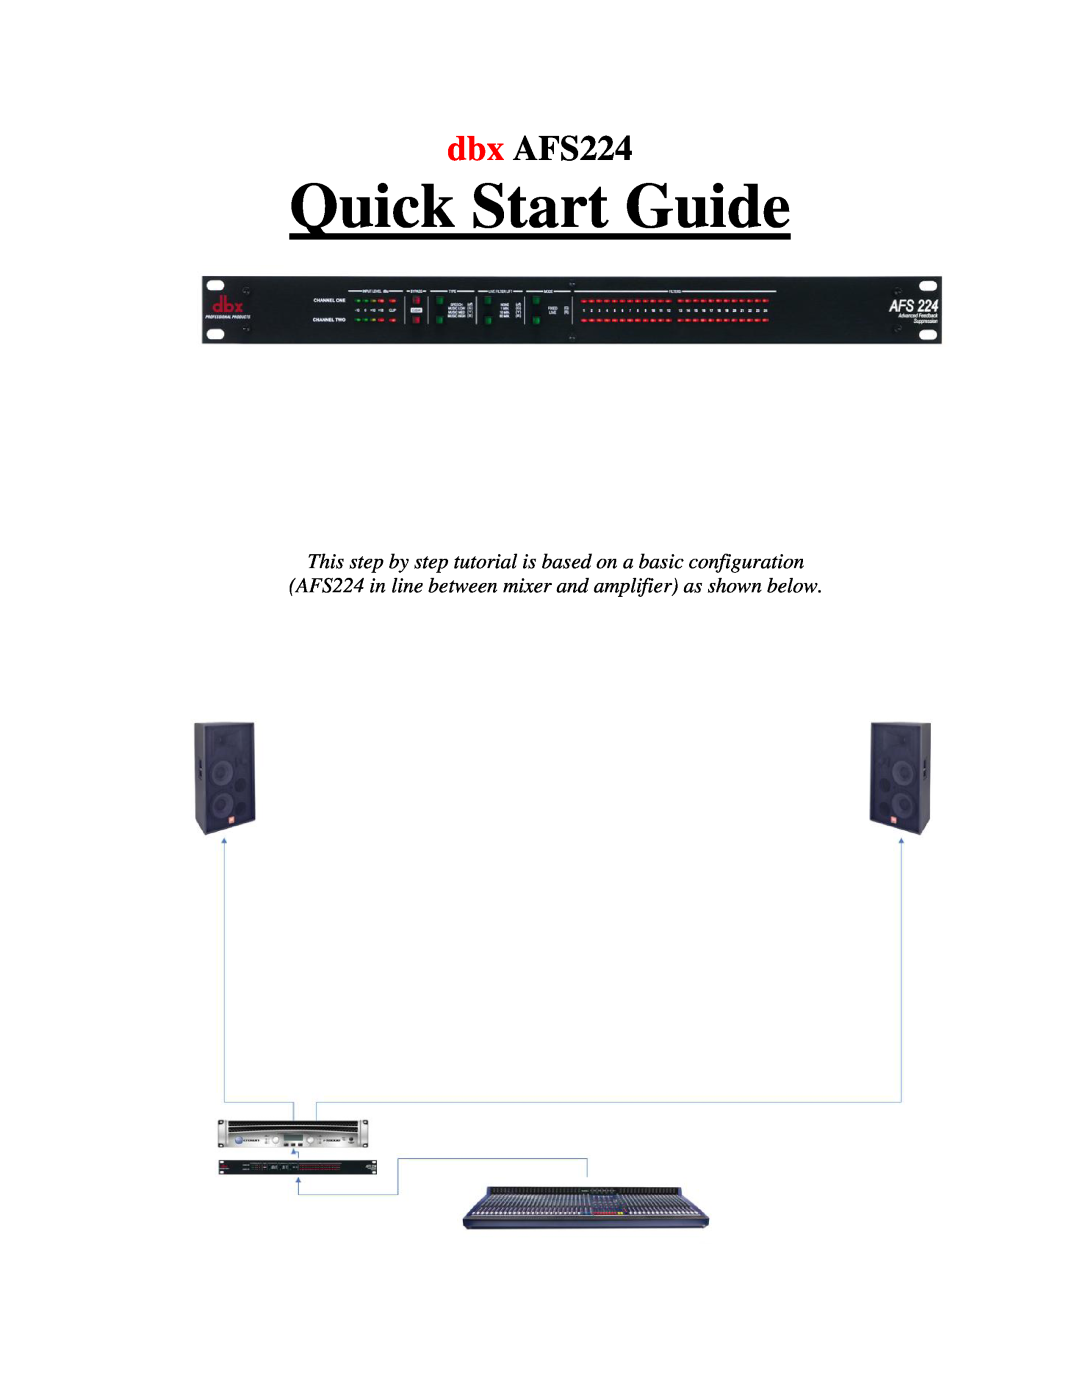 dbx Pro quick start Quick Start Guide, dbx AFS224 